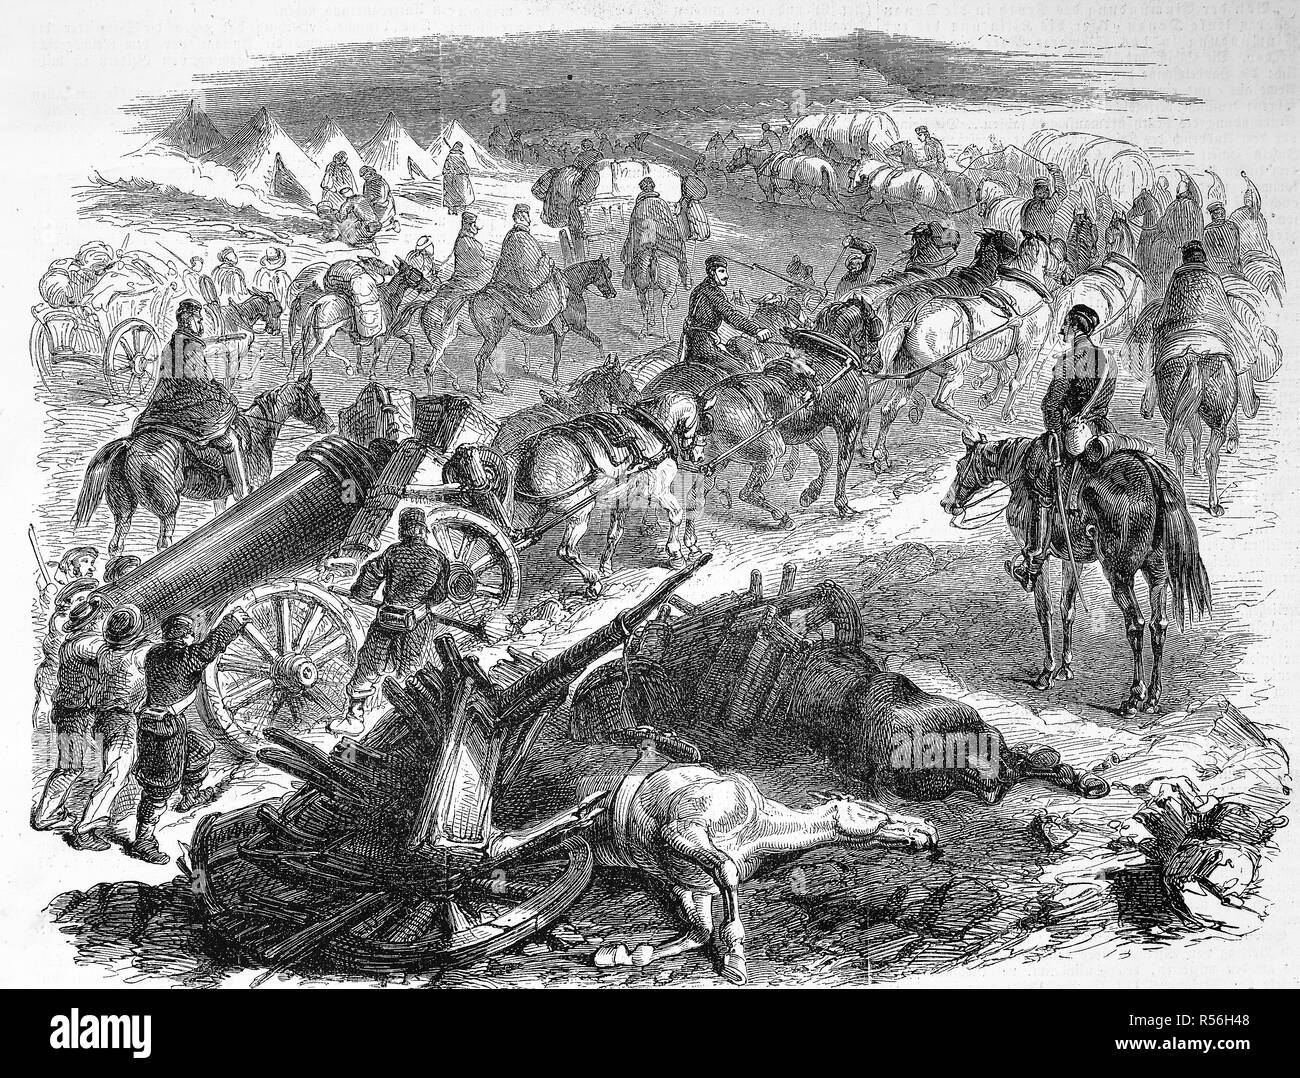 Guerre de Crimée, convoi anglais avec assurance et de l'artillerie, vient de la port de Balaklava, 1855, gravure sur bois, Angleterre Banque D'Images